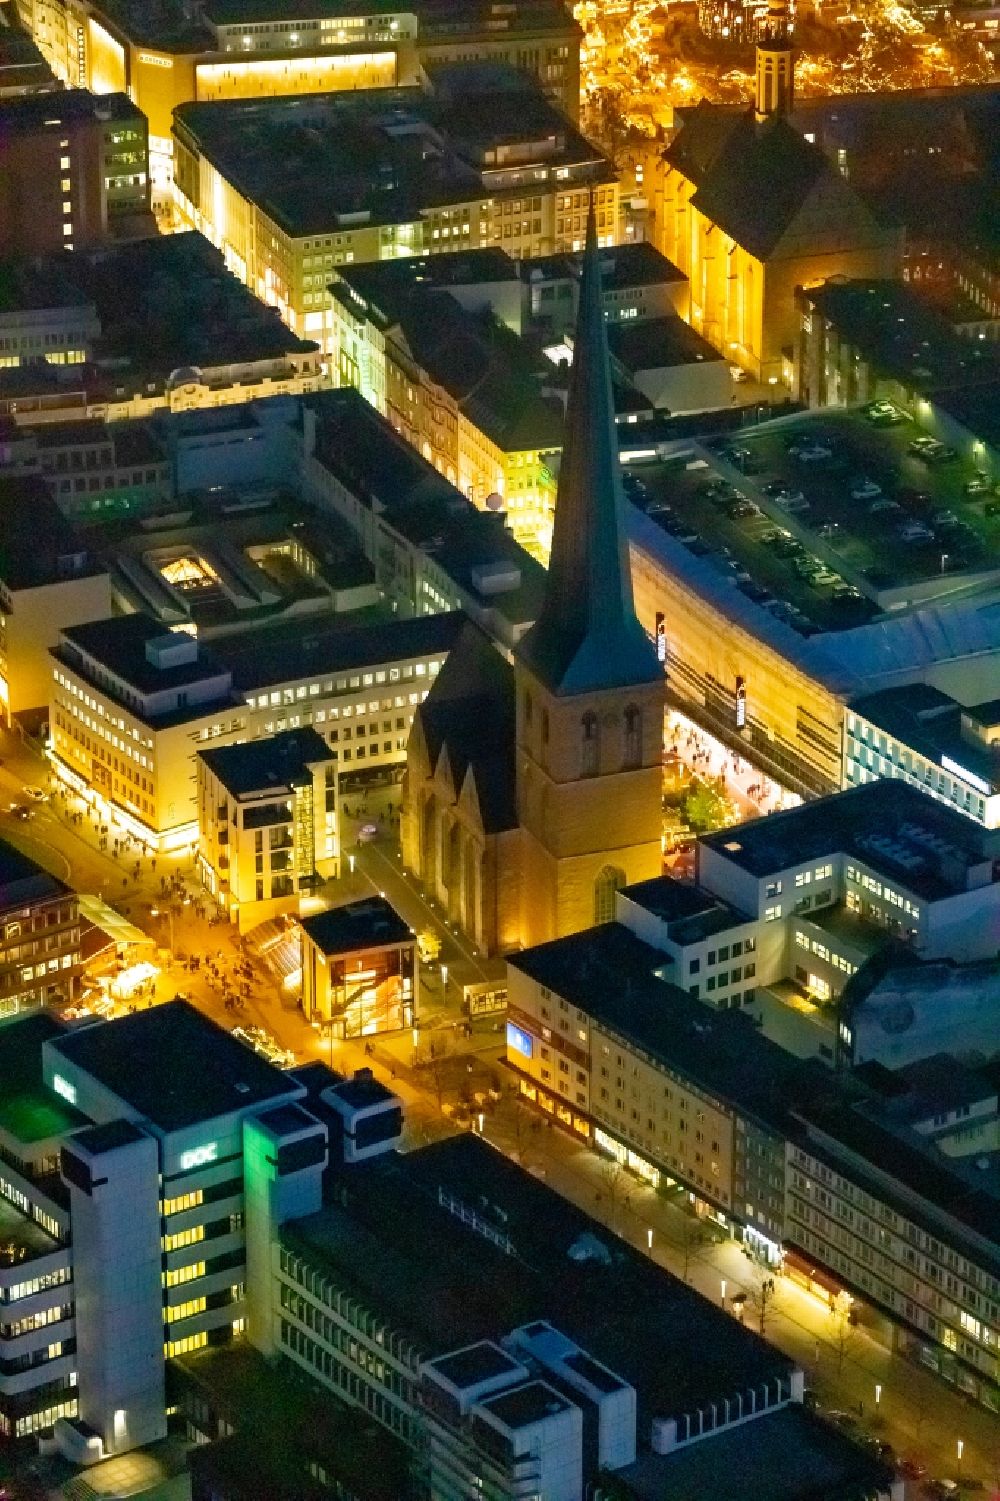 Nachtluftbild Dortmund - Nachtluftbild Kirchengebäude der St. Petri Kirche in Dortmund im Bundesland Nordrhein-Westfalen, Deutschland